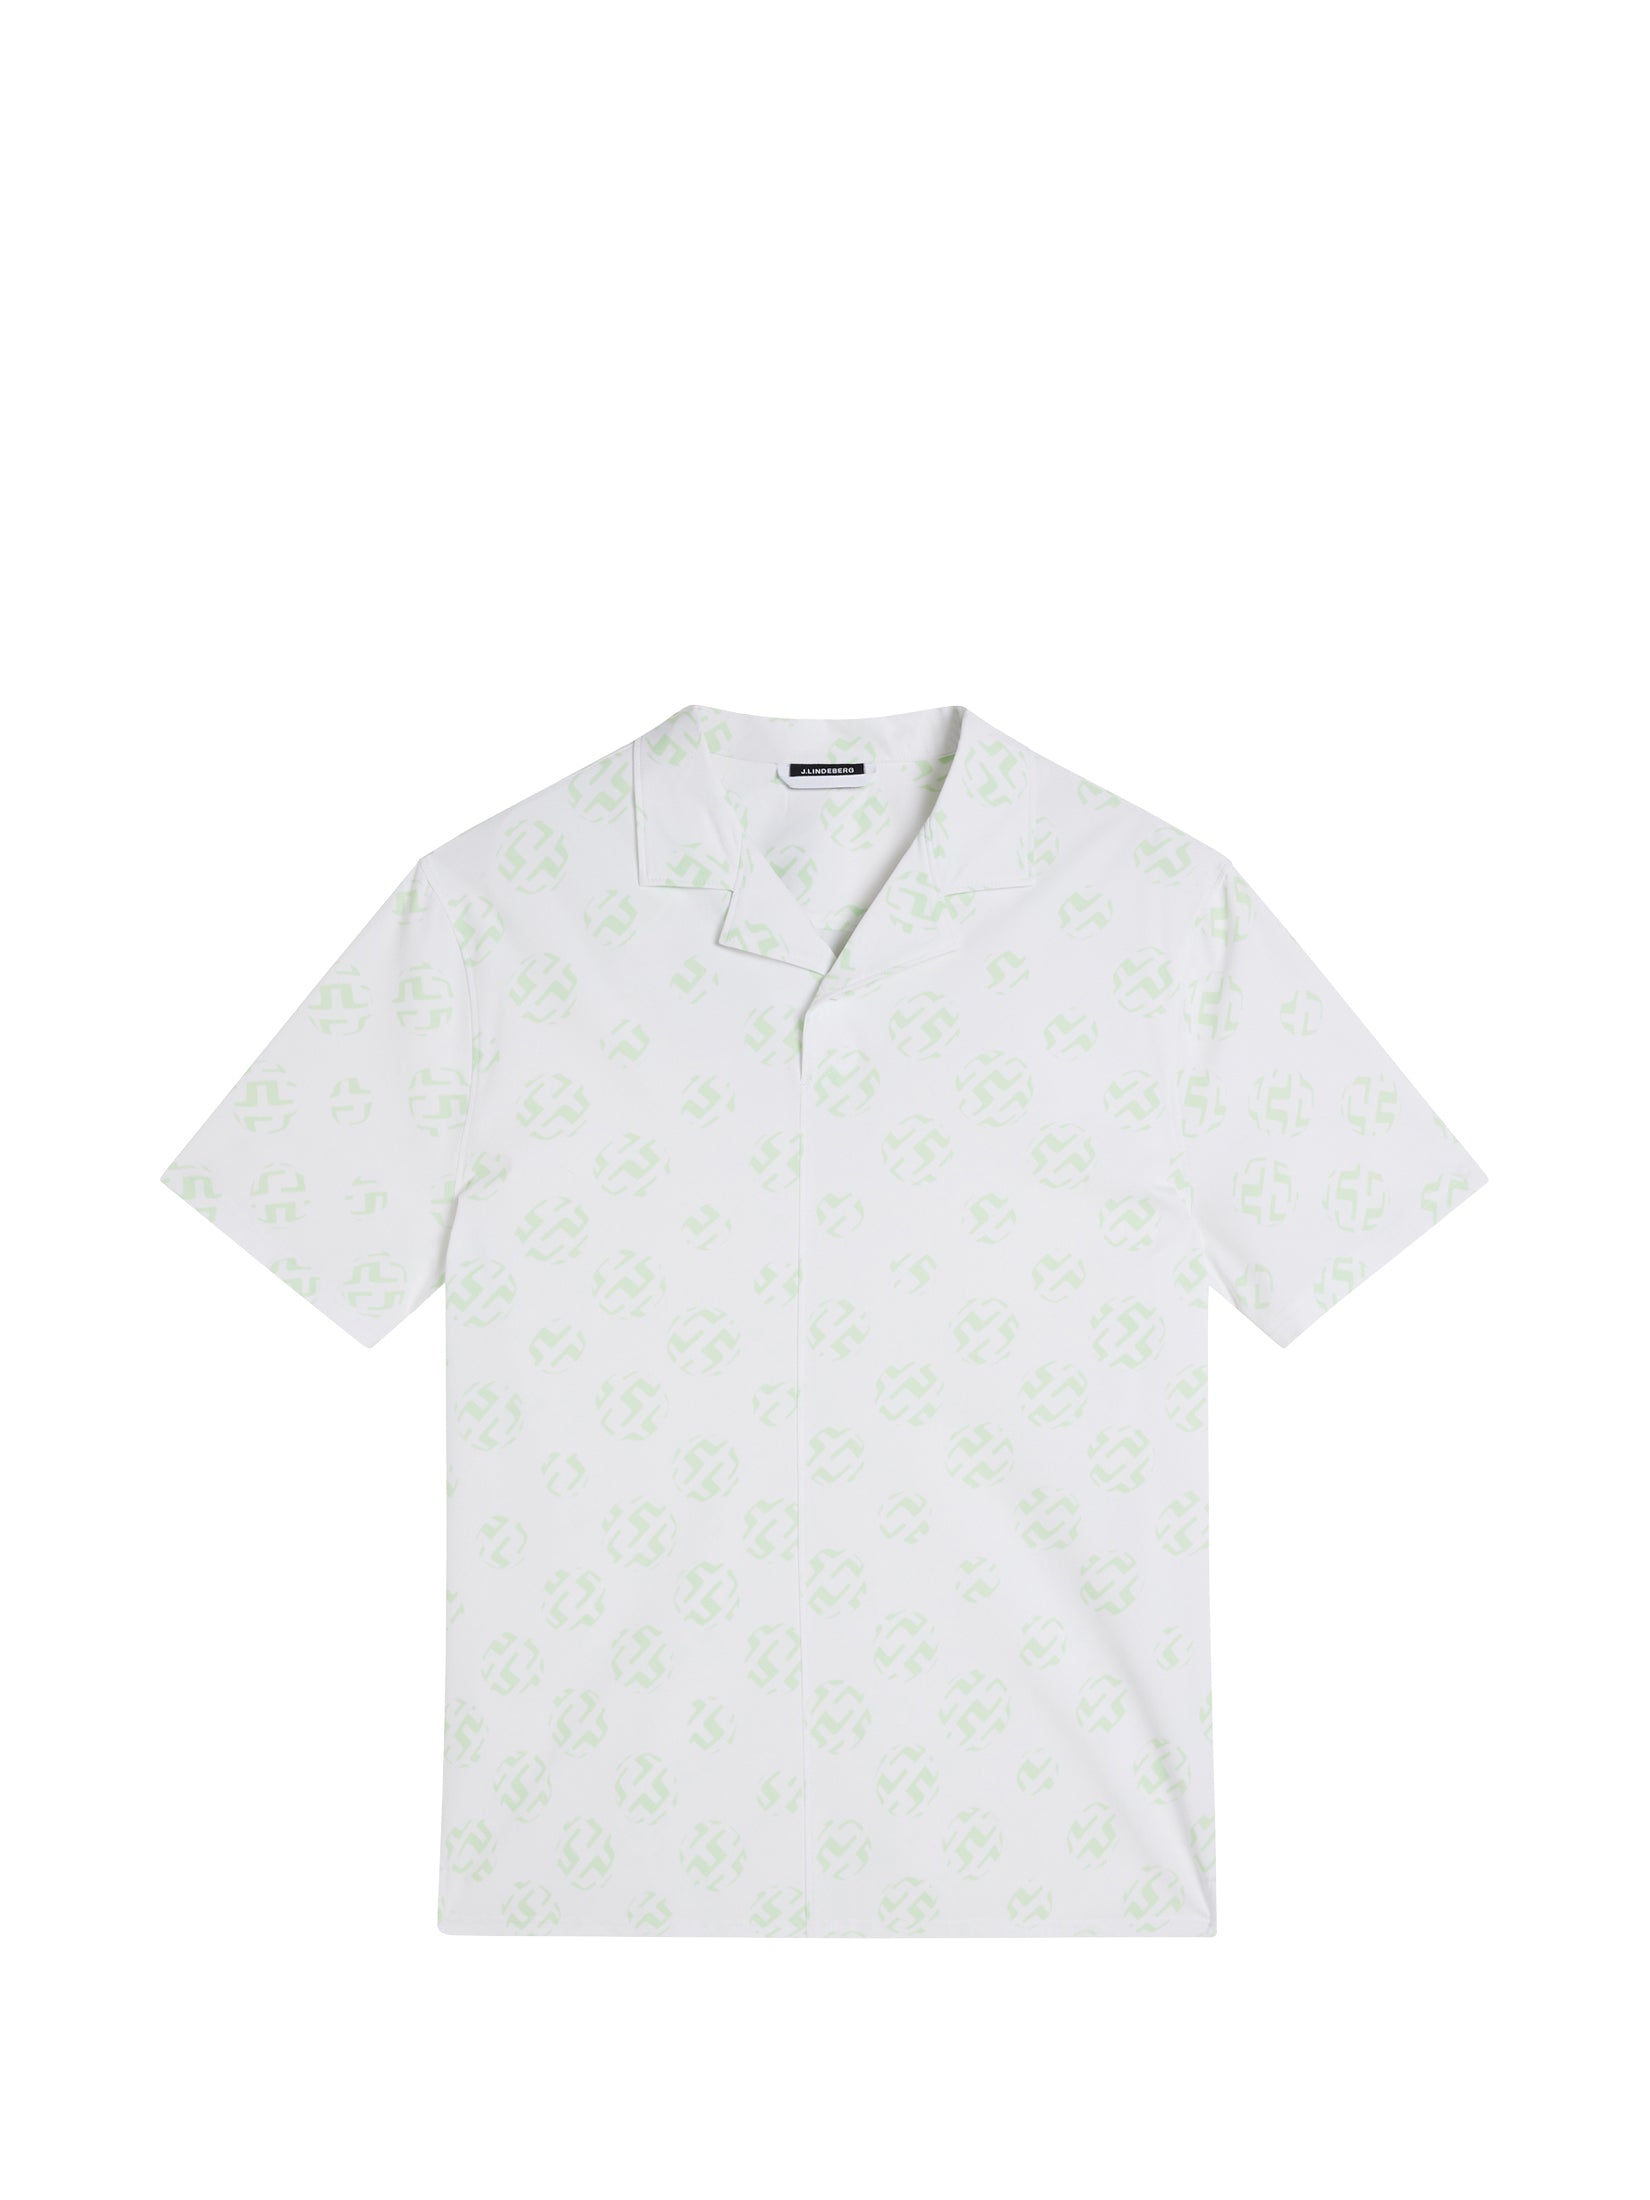 Louis Vuitton Men's White Cotton Allover Printed Logo T-Shirt White  size XL